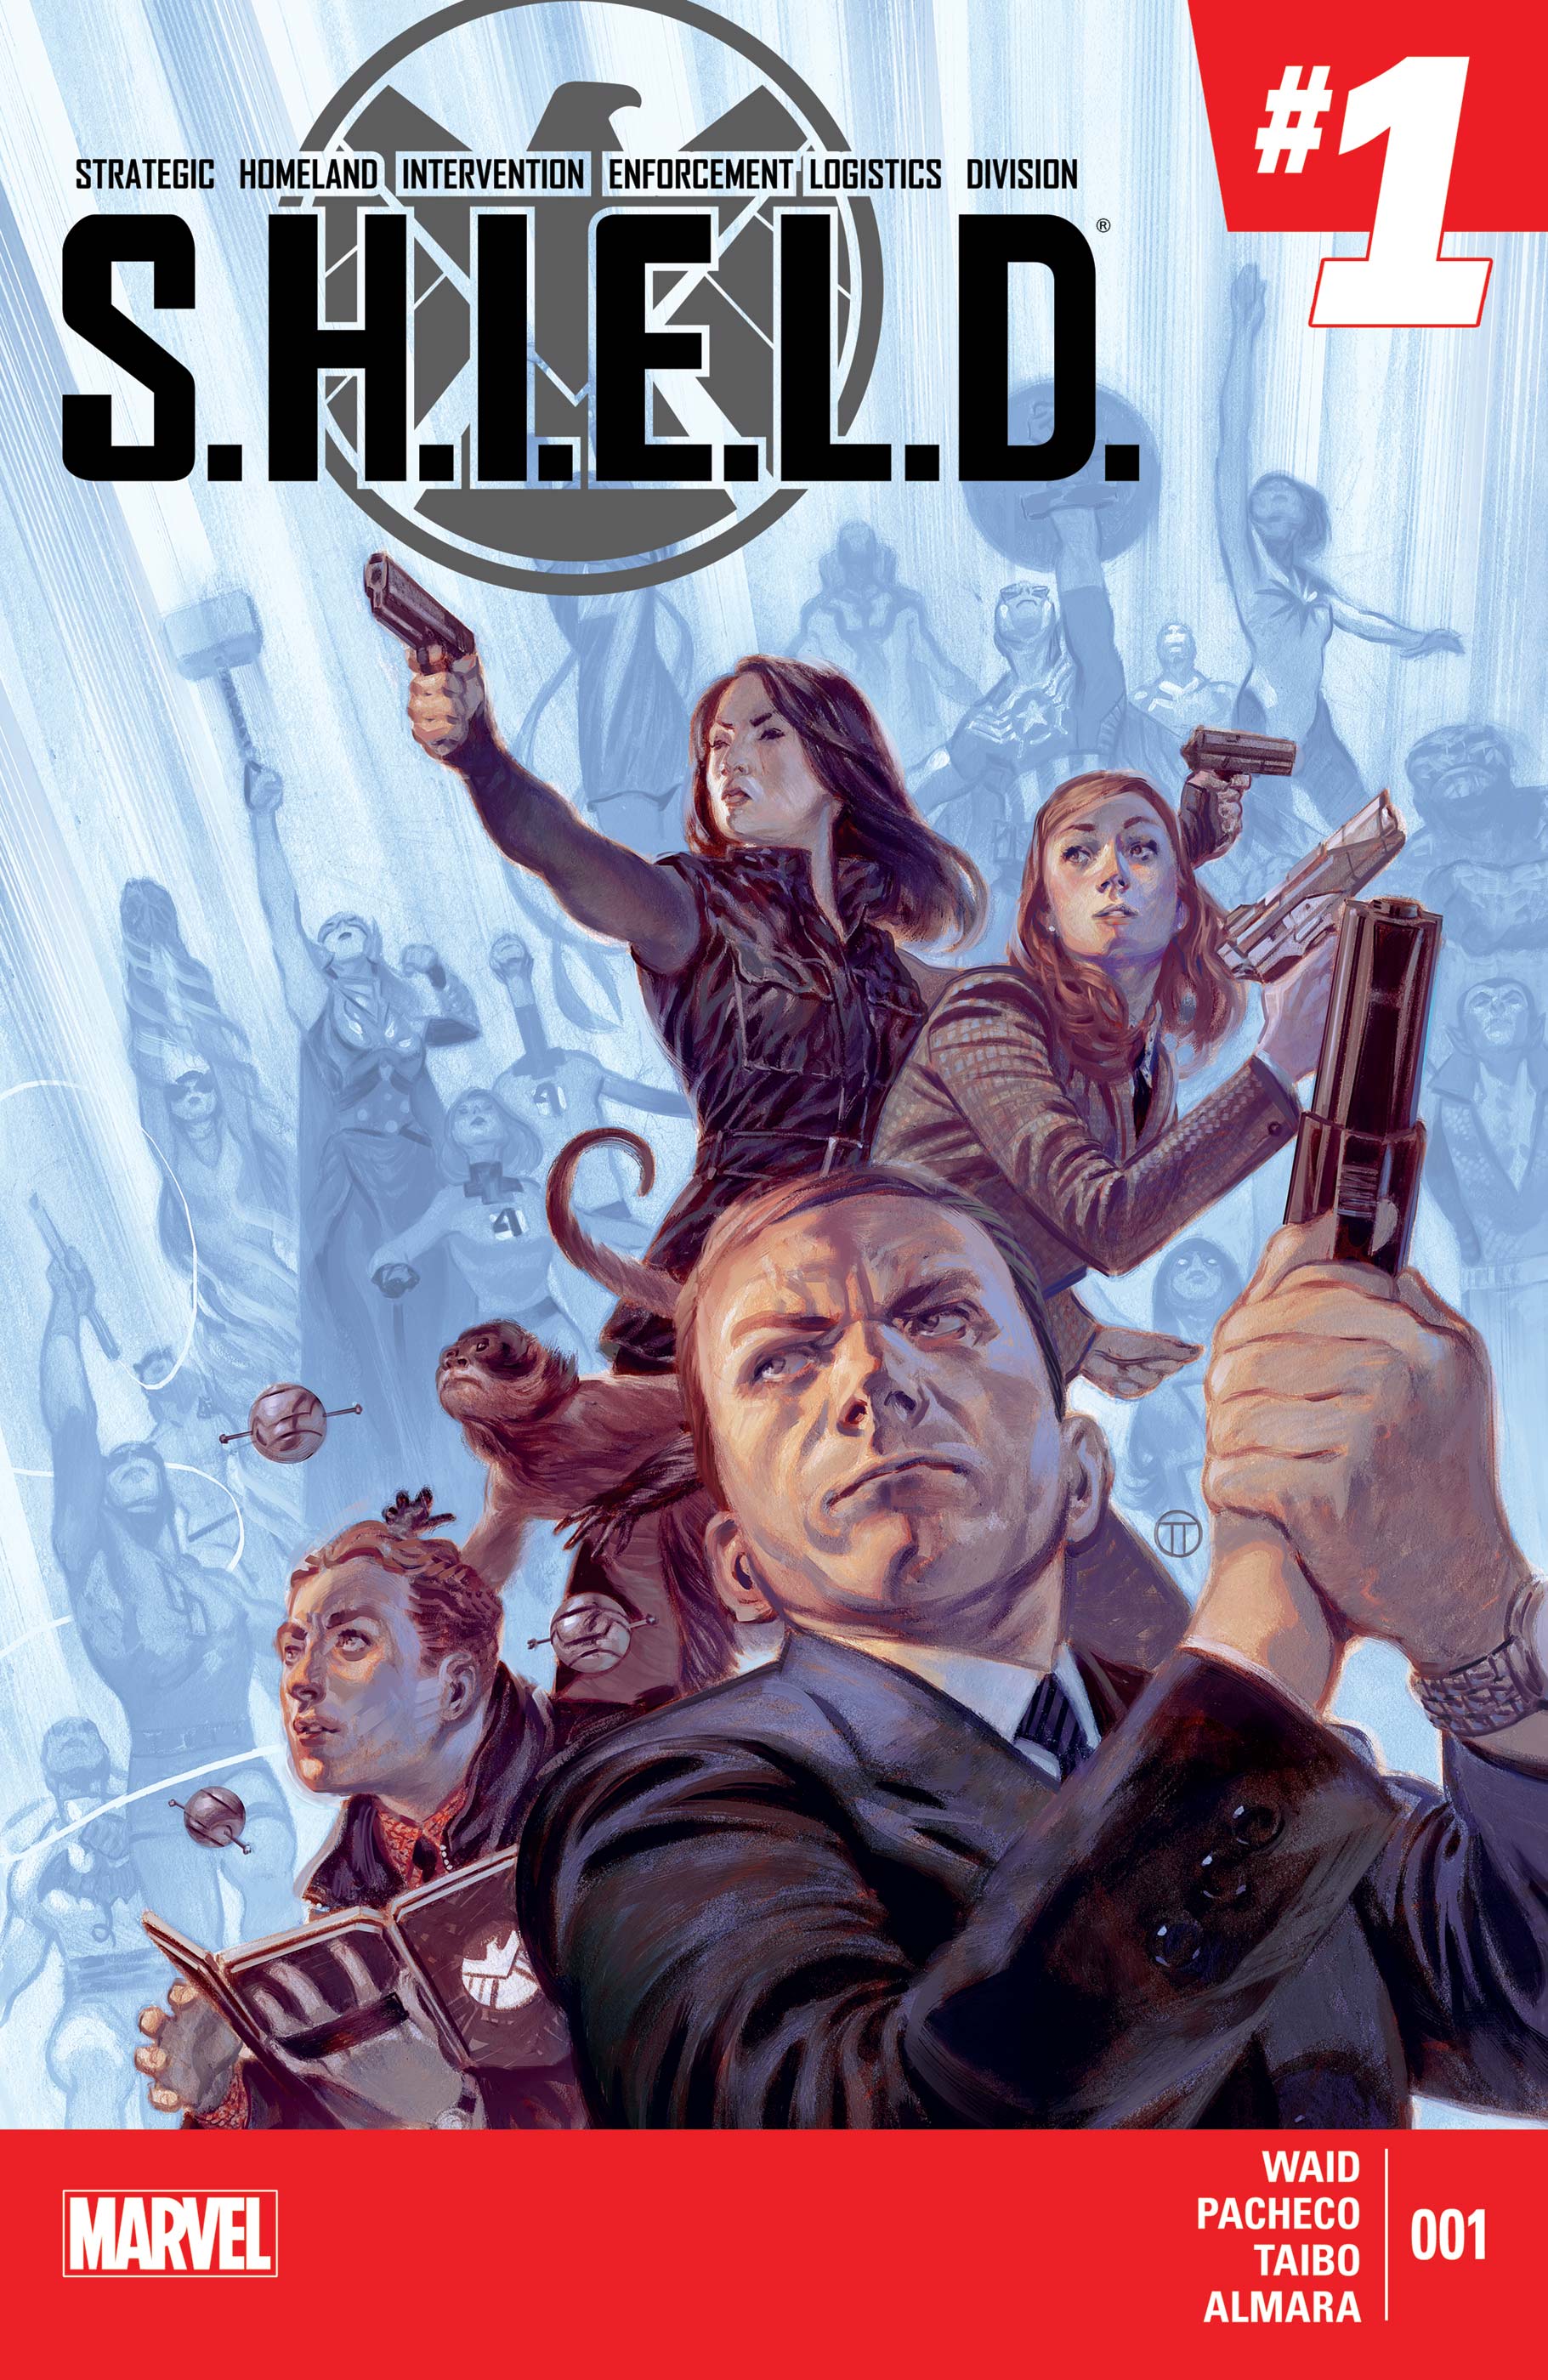 S.H.I.E.L.D. (2014) #1